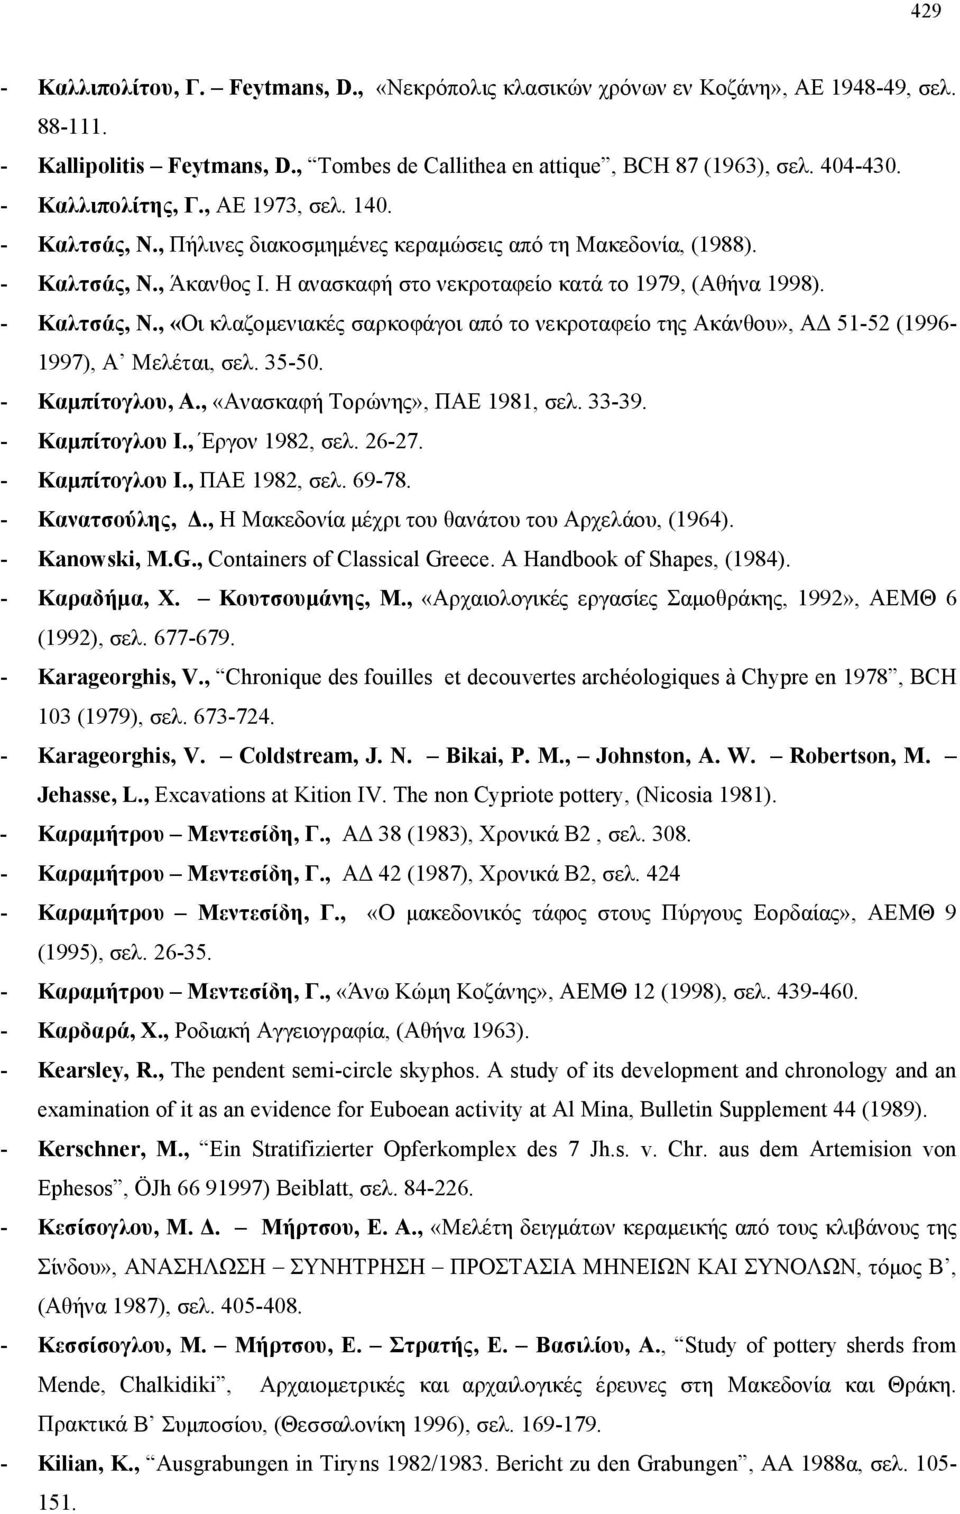 - Καλτσάς, Ν., «Οι κλαζομενιακές σαρκοφάγοι από το νεκροταφείο της Ακάνθου», ΑΔ 51-52 (1996-1997), Α Μελέται, σελ. 35-50. - Καμπίτογλου, Α., «Ανασκαφή Τορώνης», ΠΑΕ 1981, σελ. 33-39. - Καμπίτογλου Ι.